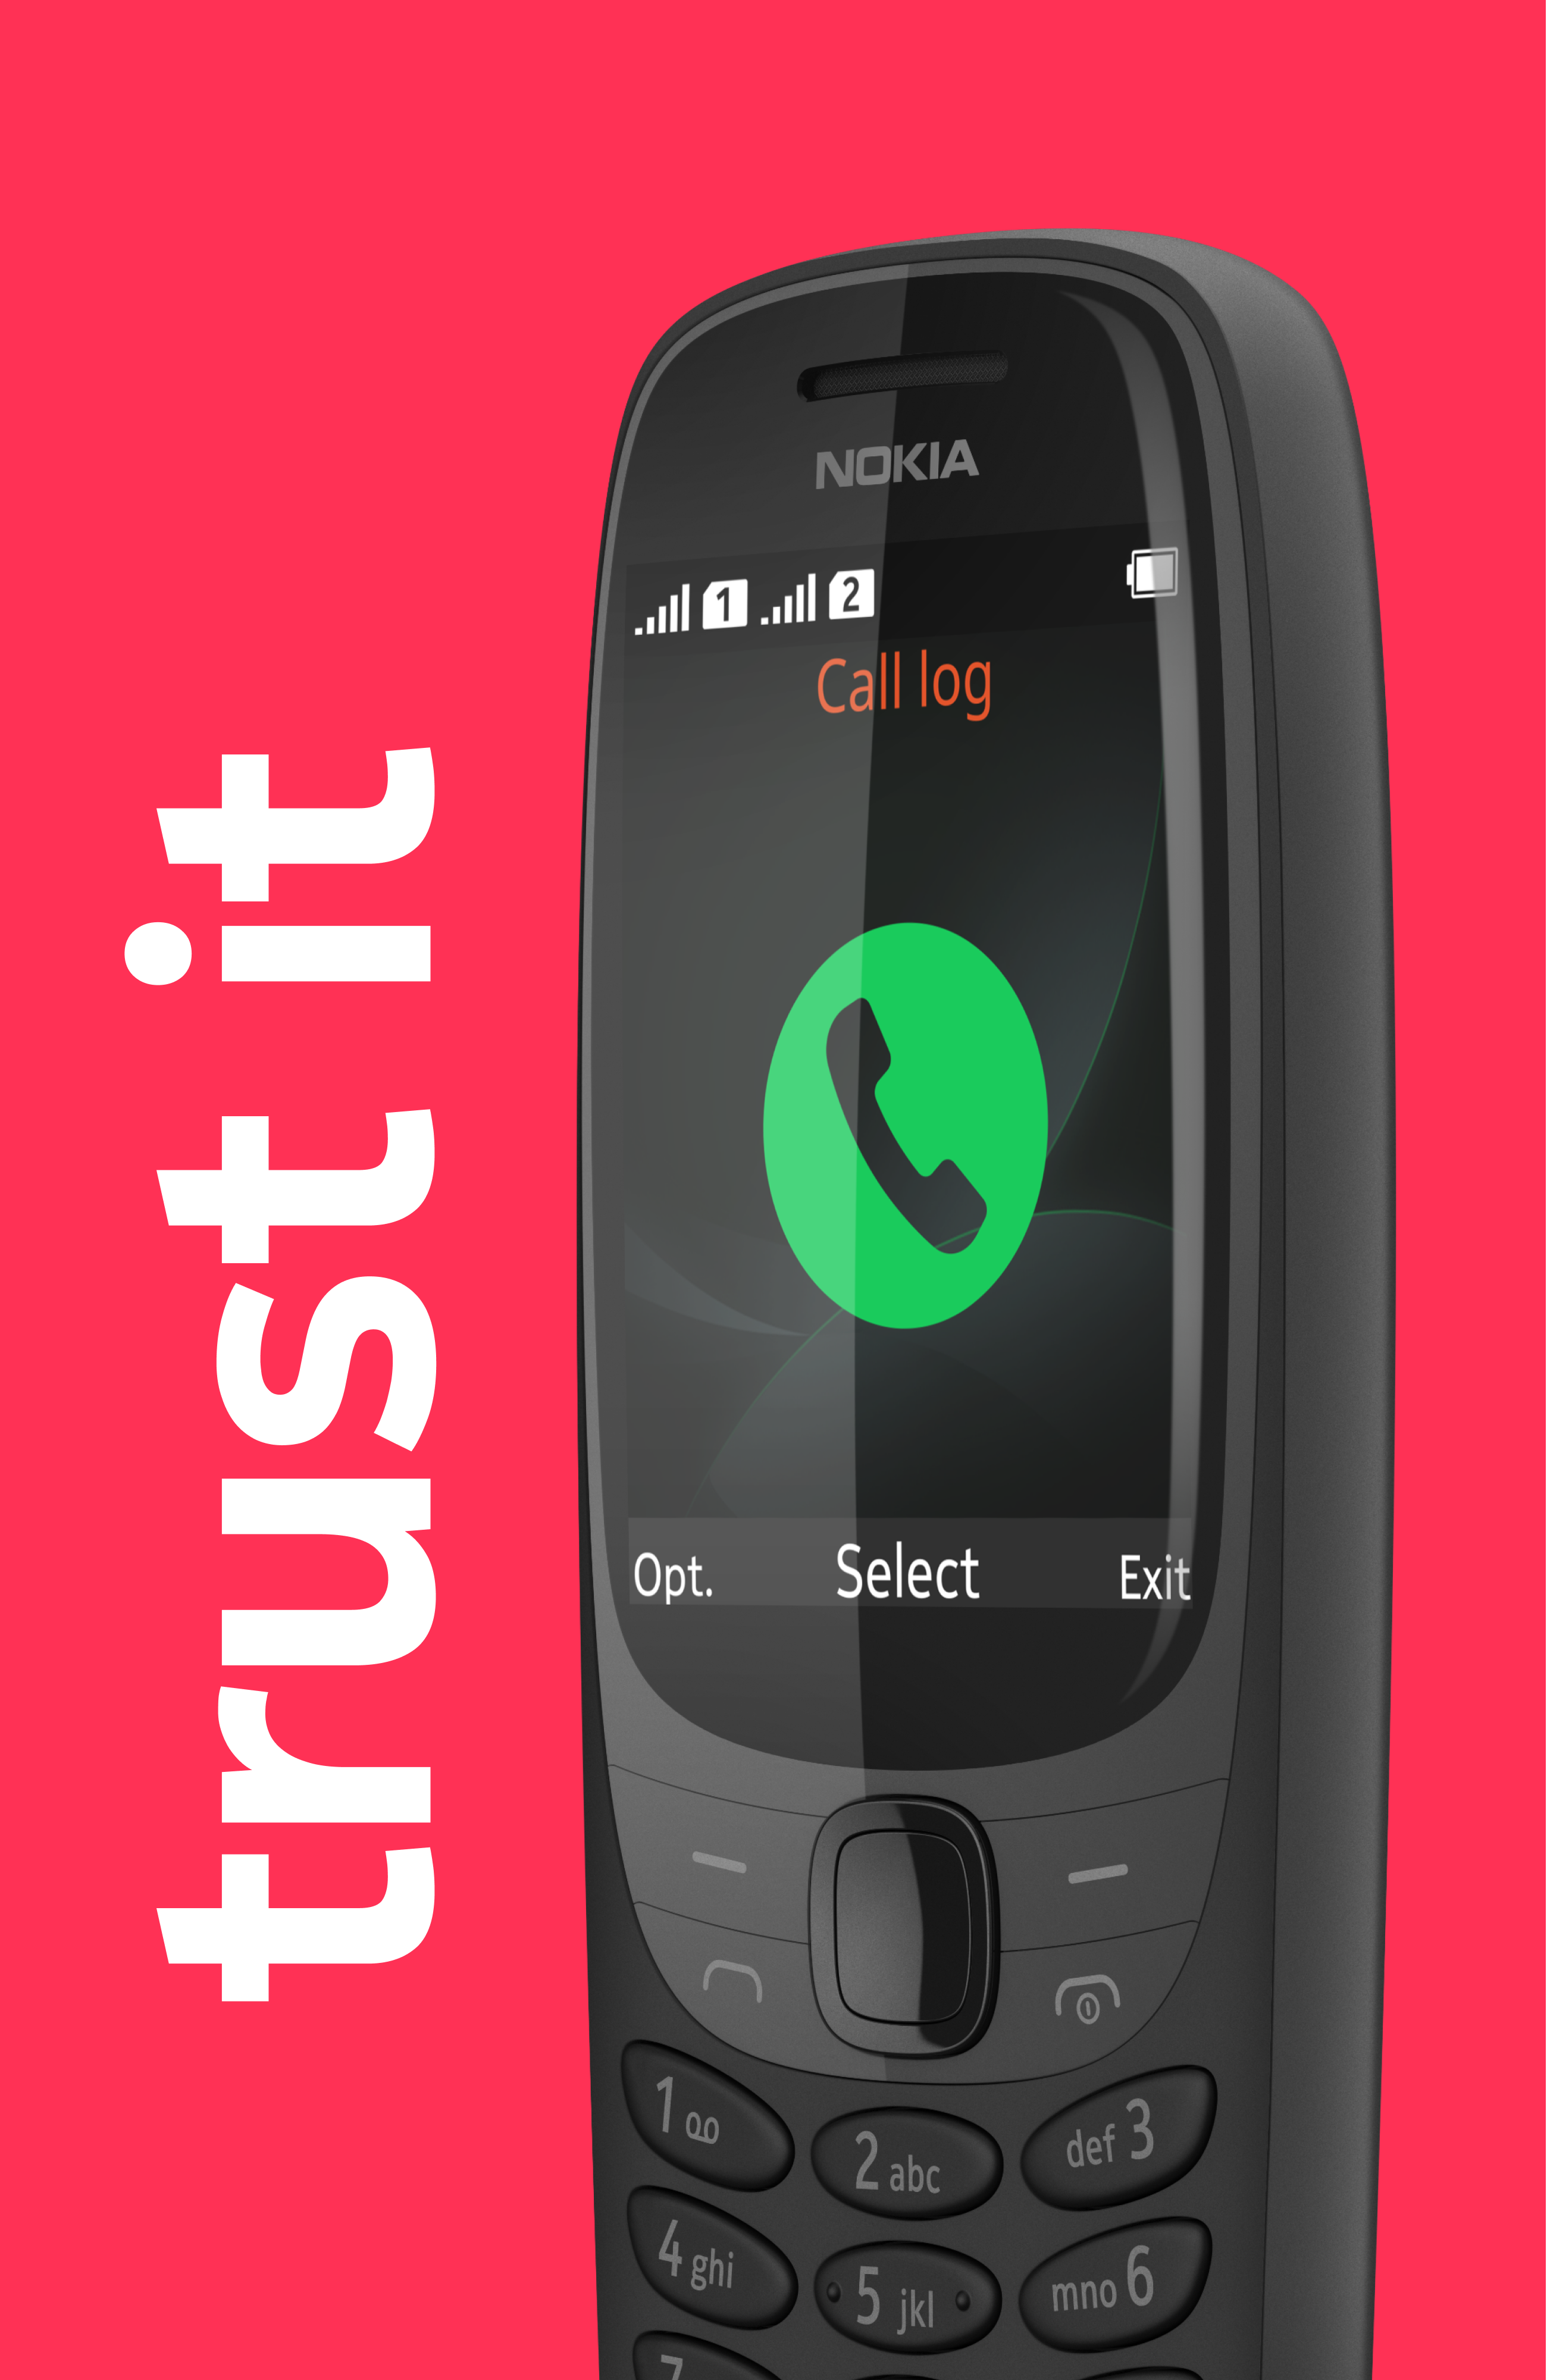 El clásico Nokia 6310 vuelve como un celular básico con semanas de